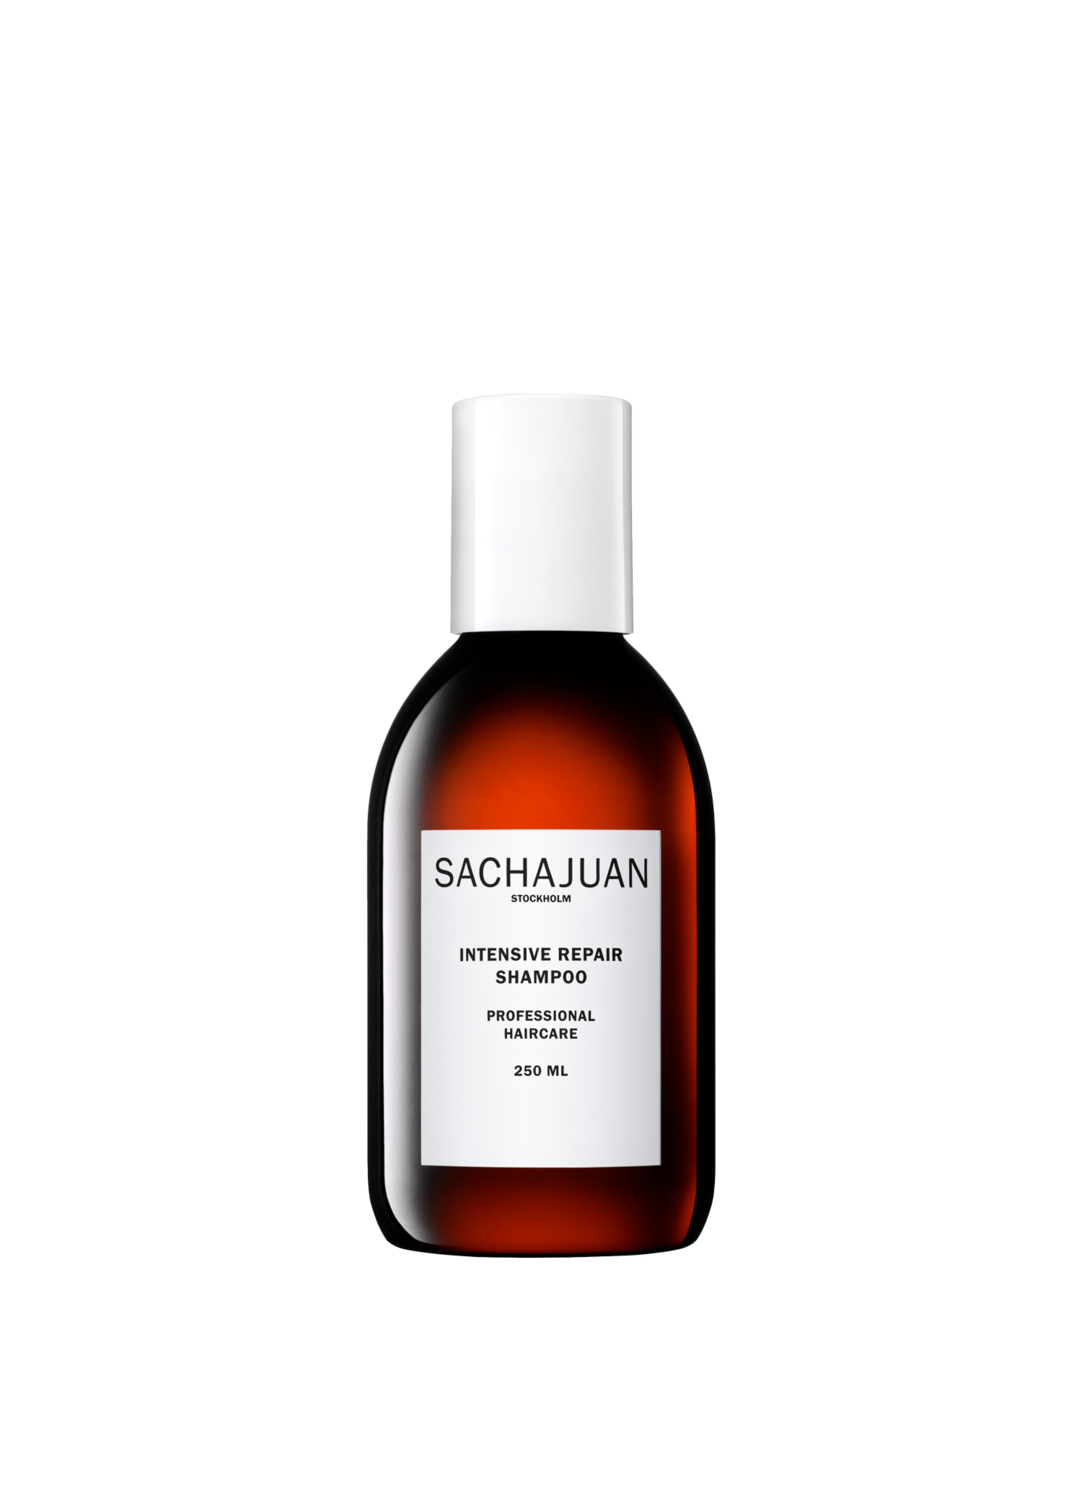 Sachajuan Intensive Repair Shampoo